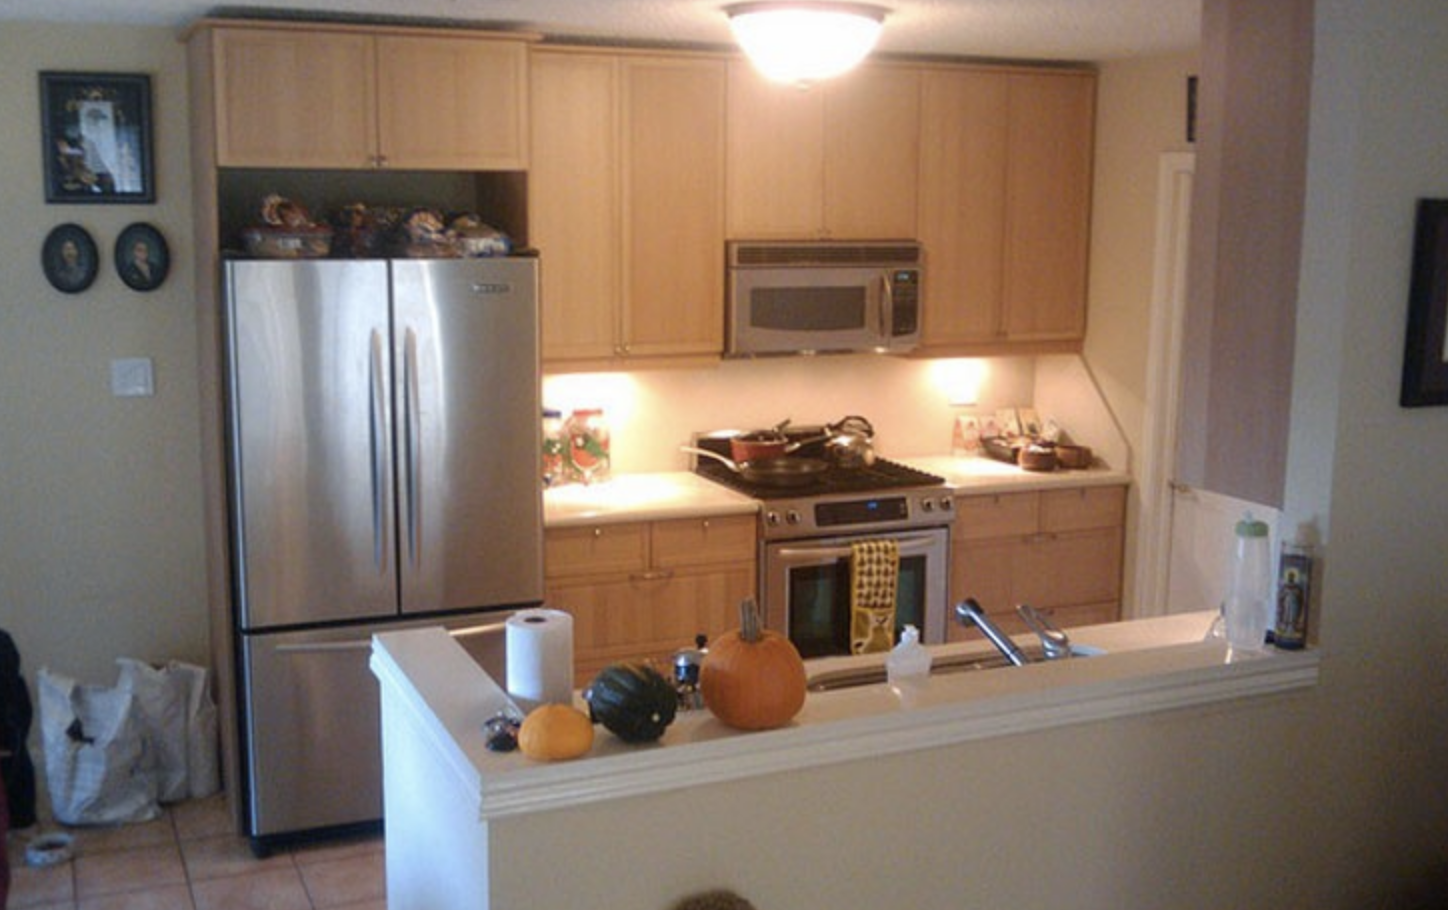 Newly restored kitchen after water/fire/smoke damage